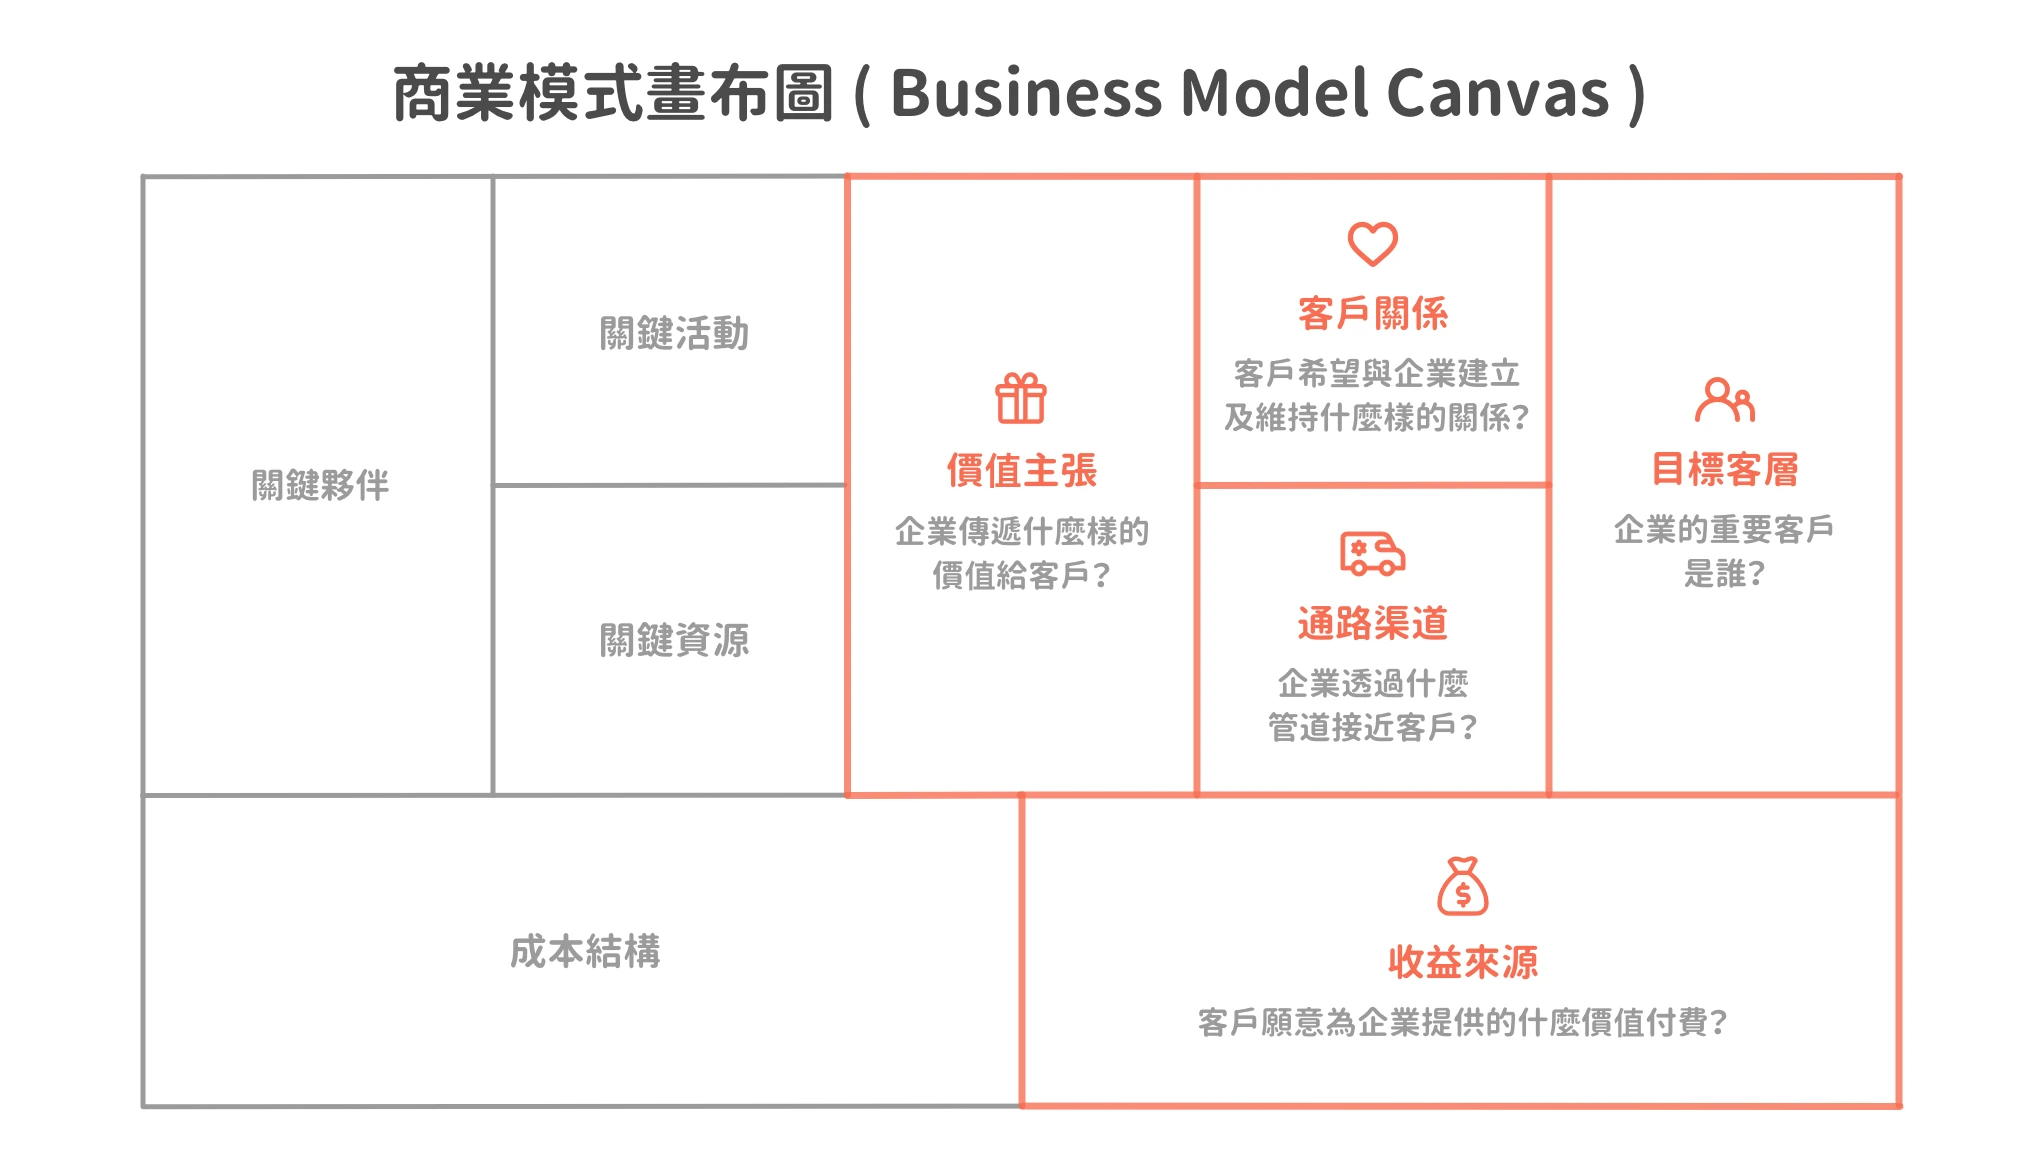 圖 1. 商業模式畫布圖 ( Business Model Canvas ) 